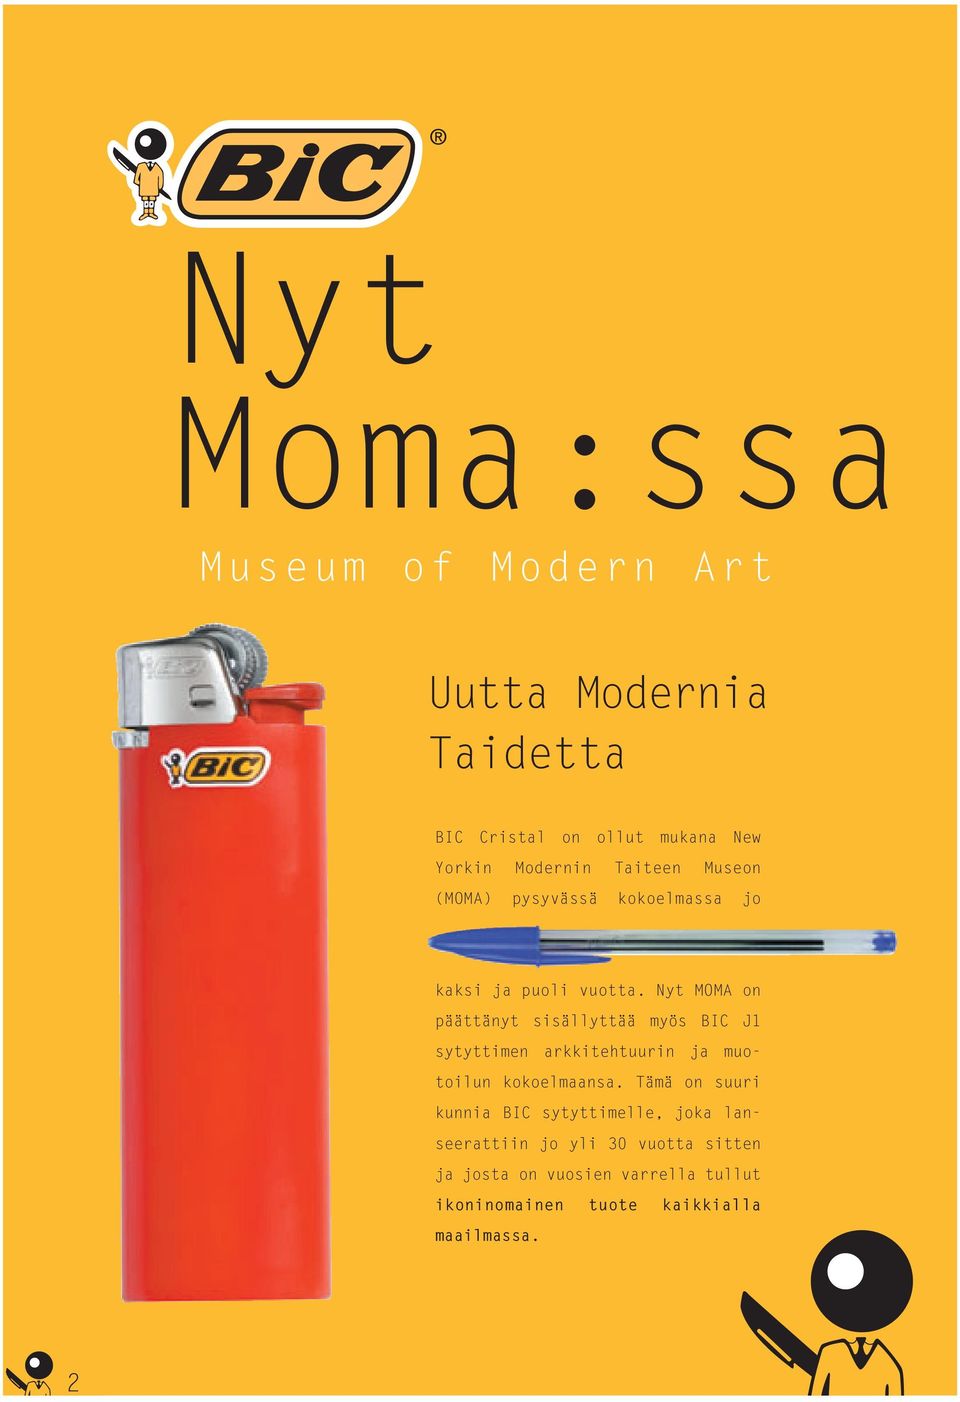 Nyt MOMA on päättänyt sisällyttää myös BIC J1 sytyttimen arkkitehtuurin ja muotoilun kokoelmaansa.